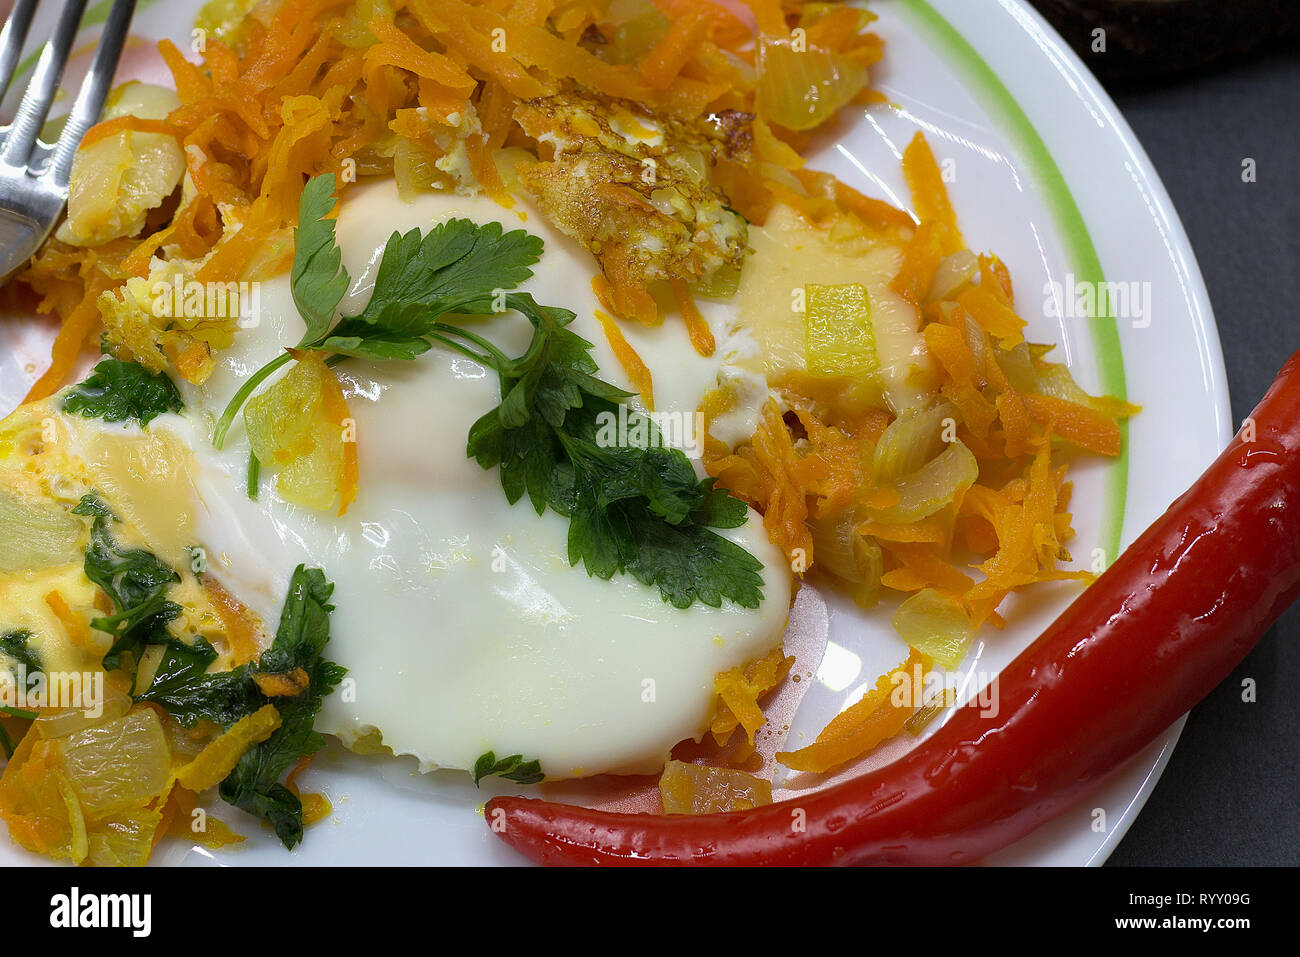 Accueil dîner sain d'œuf frit, légumes, fromage et red hot chili pepper pour une bonne digestion Banque D'Images